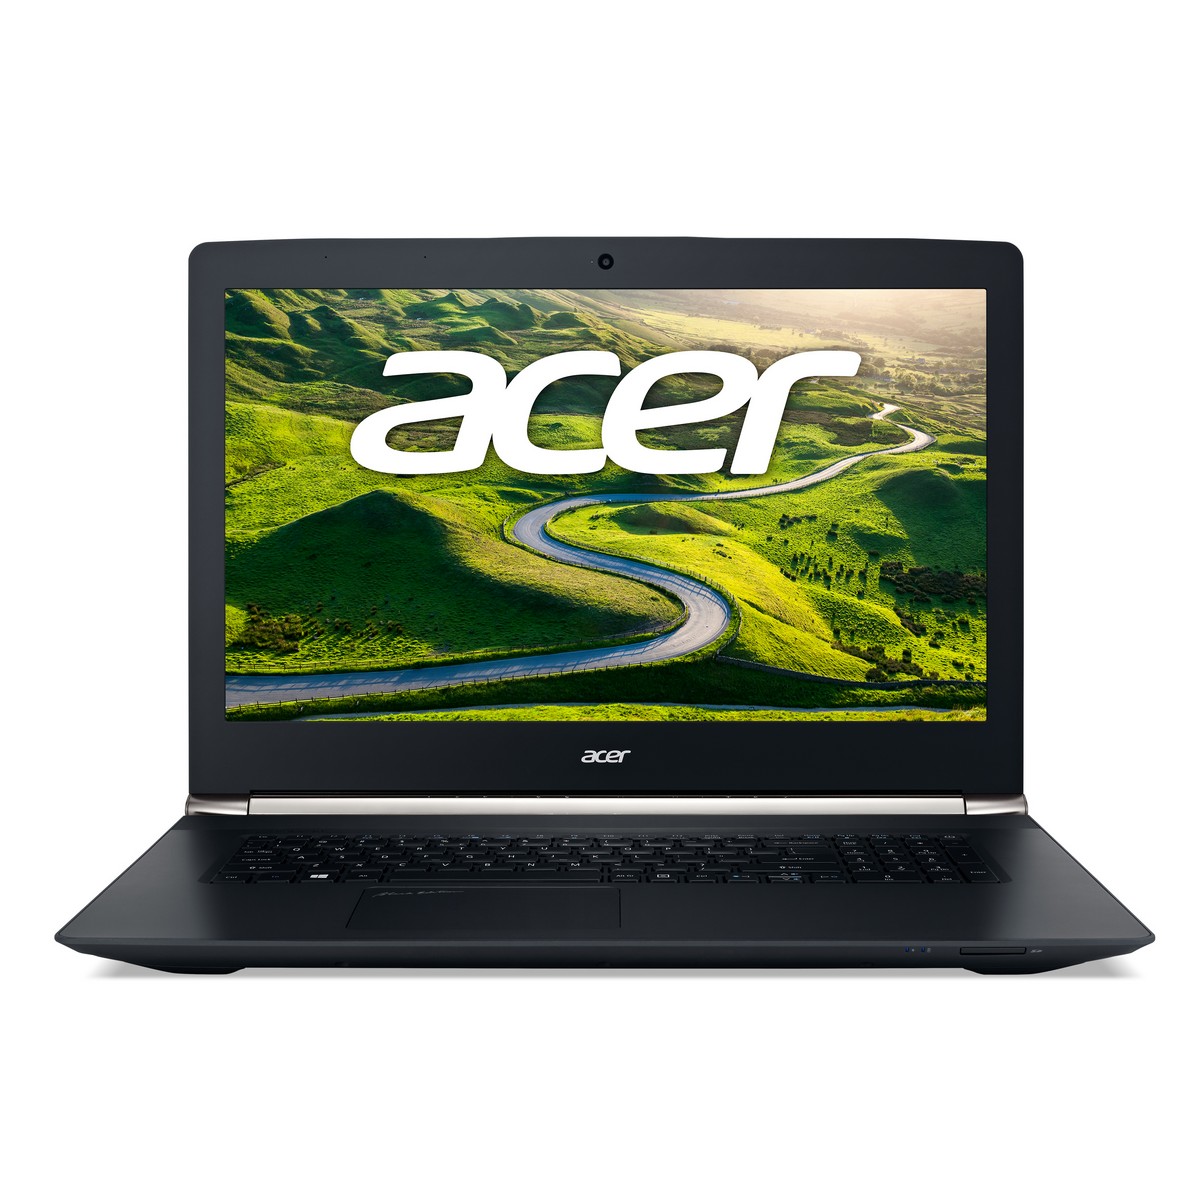 Acer Aspire V Nitro Vn7 792g 73ek 173“1920x1080i7 6700hq8 Gb Ram1